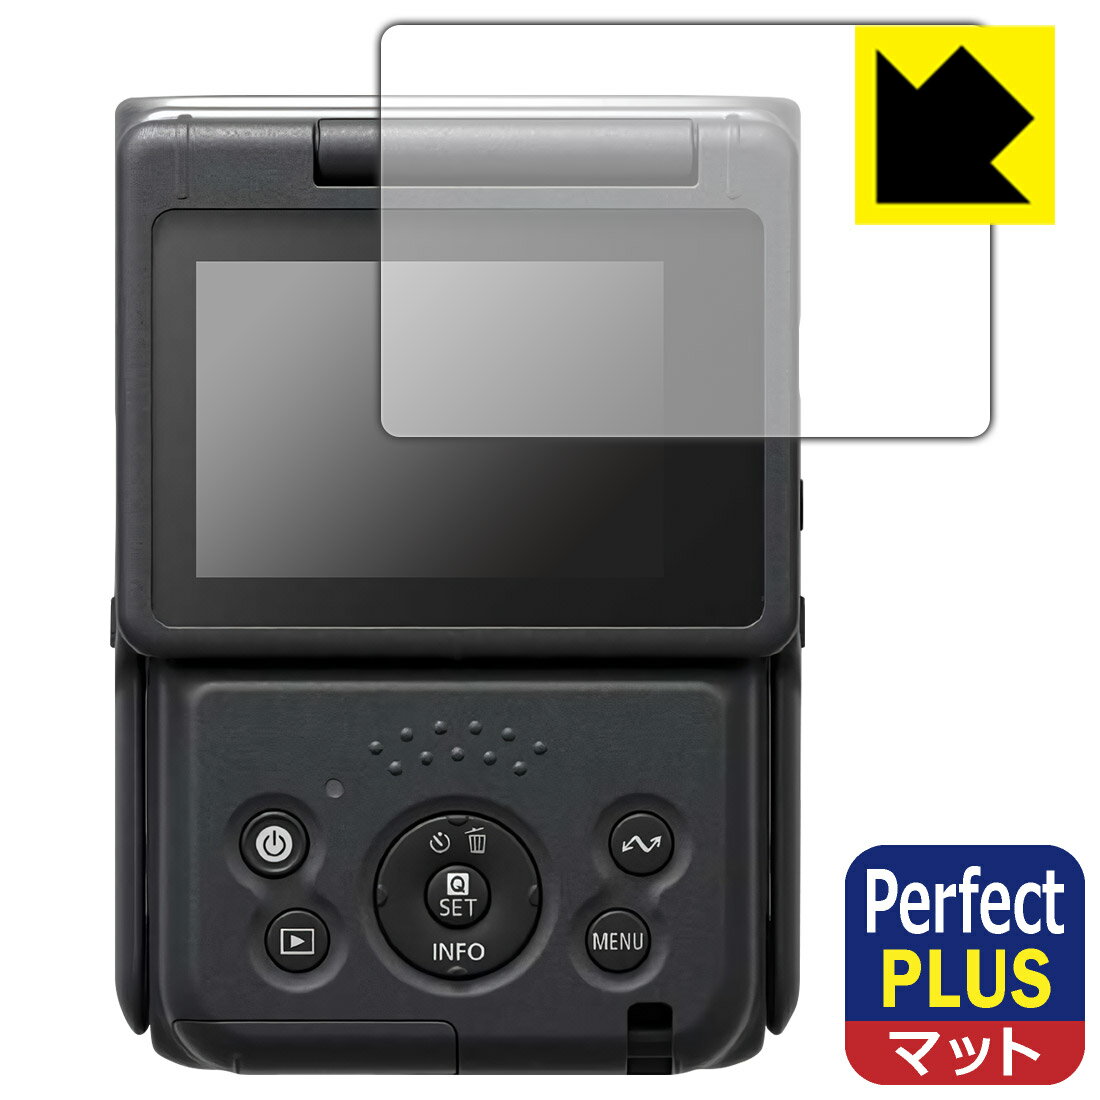 ●対応機種 : Canon Vlogカメラ PowerShot V10 (PSV10)専用の商品です。●製品内容 : 画面用フィルム1枚・クリーニングワイプ1個●「Perfect Shield Plus」は画面の反射を強く抑え、指のすべりもなめらかな指紋や皮脂汚れがつきにくい『アンチグレアタイプ(非光沢)の保護フィルム』●安心の国産素材を使用。日本国内の自社工場で製造し出荷しています。 ★貼り付け失敗交換サービス対象商品★【ポスト投函送料無料】商品は【ポスト投函発送 (追跡可能メール便)】で発送します。お急ぎ、配達日時を指定されたい方は以下のクーポンを同時購入ください。【お急ぎ便クーポン】　プラス110円(税込)で速達扱いでの発送。お届けはポストへの投函となります。【配達日時指定クーポン】　プラス550円(税込)で配達日時を指定し、宅配便で発送させていただきます。【お急ぎ便クーポン】はこちらをクリック【配達日時指定クーポン】はこちらをクリック 　 表面に微細な凹凸を作ることにより、外光を乱反射させギラツキを抑える「アンチグレア加工」がされております。 屋外での太陽光の映り込み、屋内でも蛍光灯などの映り込みが気になるシーンが多い方におすすめです。 また、指紋がついた場合でも目立ちにくいという特長があります。 【Perfect Shield Plus】は、従来の製品【Perfect Shield】よりも反射低減(アンチグレア)効果が強いフィルムです。映り込み防止を一番に優先する方におすすめです。(反射低減効果が強いため、表示画面との相性により色のにじみ・モアレ等が発生する場合があります) 指滑りはさらさらな使用感でストレスのない操作・入力が可能です。 ハードコート加工がされており、キズや擦れに強くなっています。簡単にキズがつかず長くご利用いただけます。 反射防止のアンチグレア加工で指紋が目立ちにくい上、表面は防汚コーティングがされており、皮脂や汚れがつきにくく、また、落ちやすくなっています。(【Perfect Shield】よりも指紋は目立ちません) 接着面は気泡の入りにくい特殊な自己吸着タイプです。素材に柔軟性があり、貼り付け作業も簡単にできます。また、はがすときにガラス製フィルムのように割れてしまうことはありません。 貼り直しが何度でもできるので、正しい位置へ貼り付けられるまでやり直すことができます。 最高級グレードの国産素材を日本国内の弊社工場で加工している完全な Made in Japan です。安心の品質をお届けします。 使用上の注意 ●本製品は機器の画面をキズなどから保護するフィルムです。他の目的にはご使用にならないでください。 ●本製品は液晶保護および機器本体を完全に保護することを保証するものではありません。機器の破損、損傷、故障、その他損害につきましては一切の責任を負いかねます。 ●製品の性質上、画面操作の反応が変化したり、表示等が変化して見える場合がございます。 ●貼り付け作業時の失敗(位置ズレ、汚れ、ゆがみ、折れ、気泡など)および取り外し作業時の破損、損傷などについては、一切の責任を負いかねます。 ●水に濡れた状態でのご使用は吸着力の低下などにより、保護フィルムがはがれてしまう場合がございます。防水対応の機器でご使用の場合はご注意ください。 ●アルコール類やその他薬剤を本製品に付着させないでください。表面のコーティングや吸着面が変質するおそれがあります。 ●品質向上のため、仕様などを予告なく変更する場合がございますので、予めご了承ください。